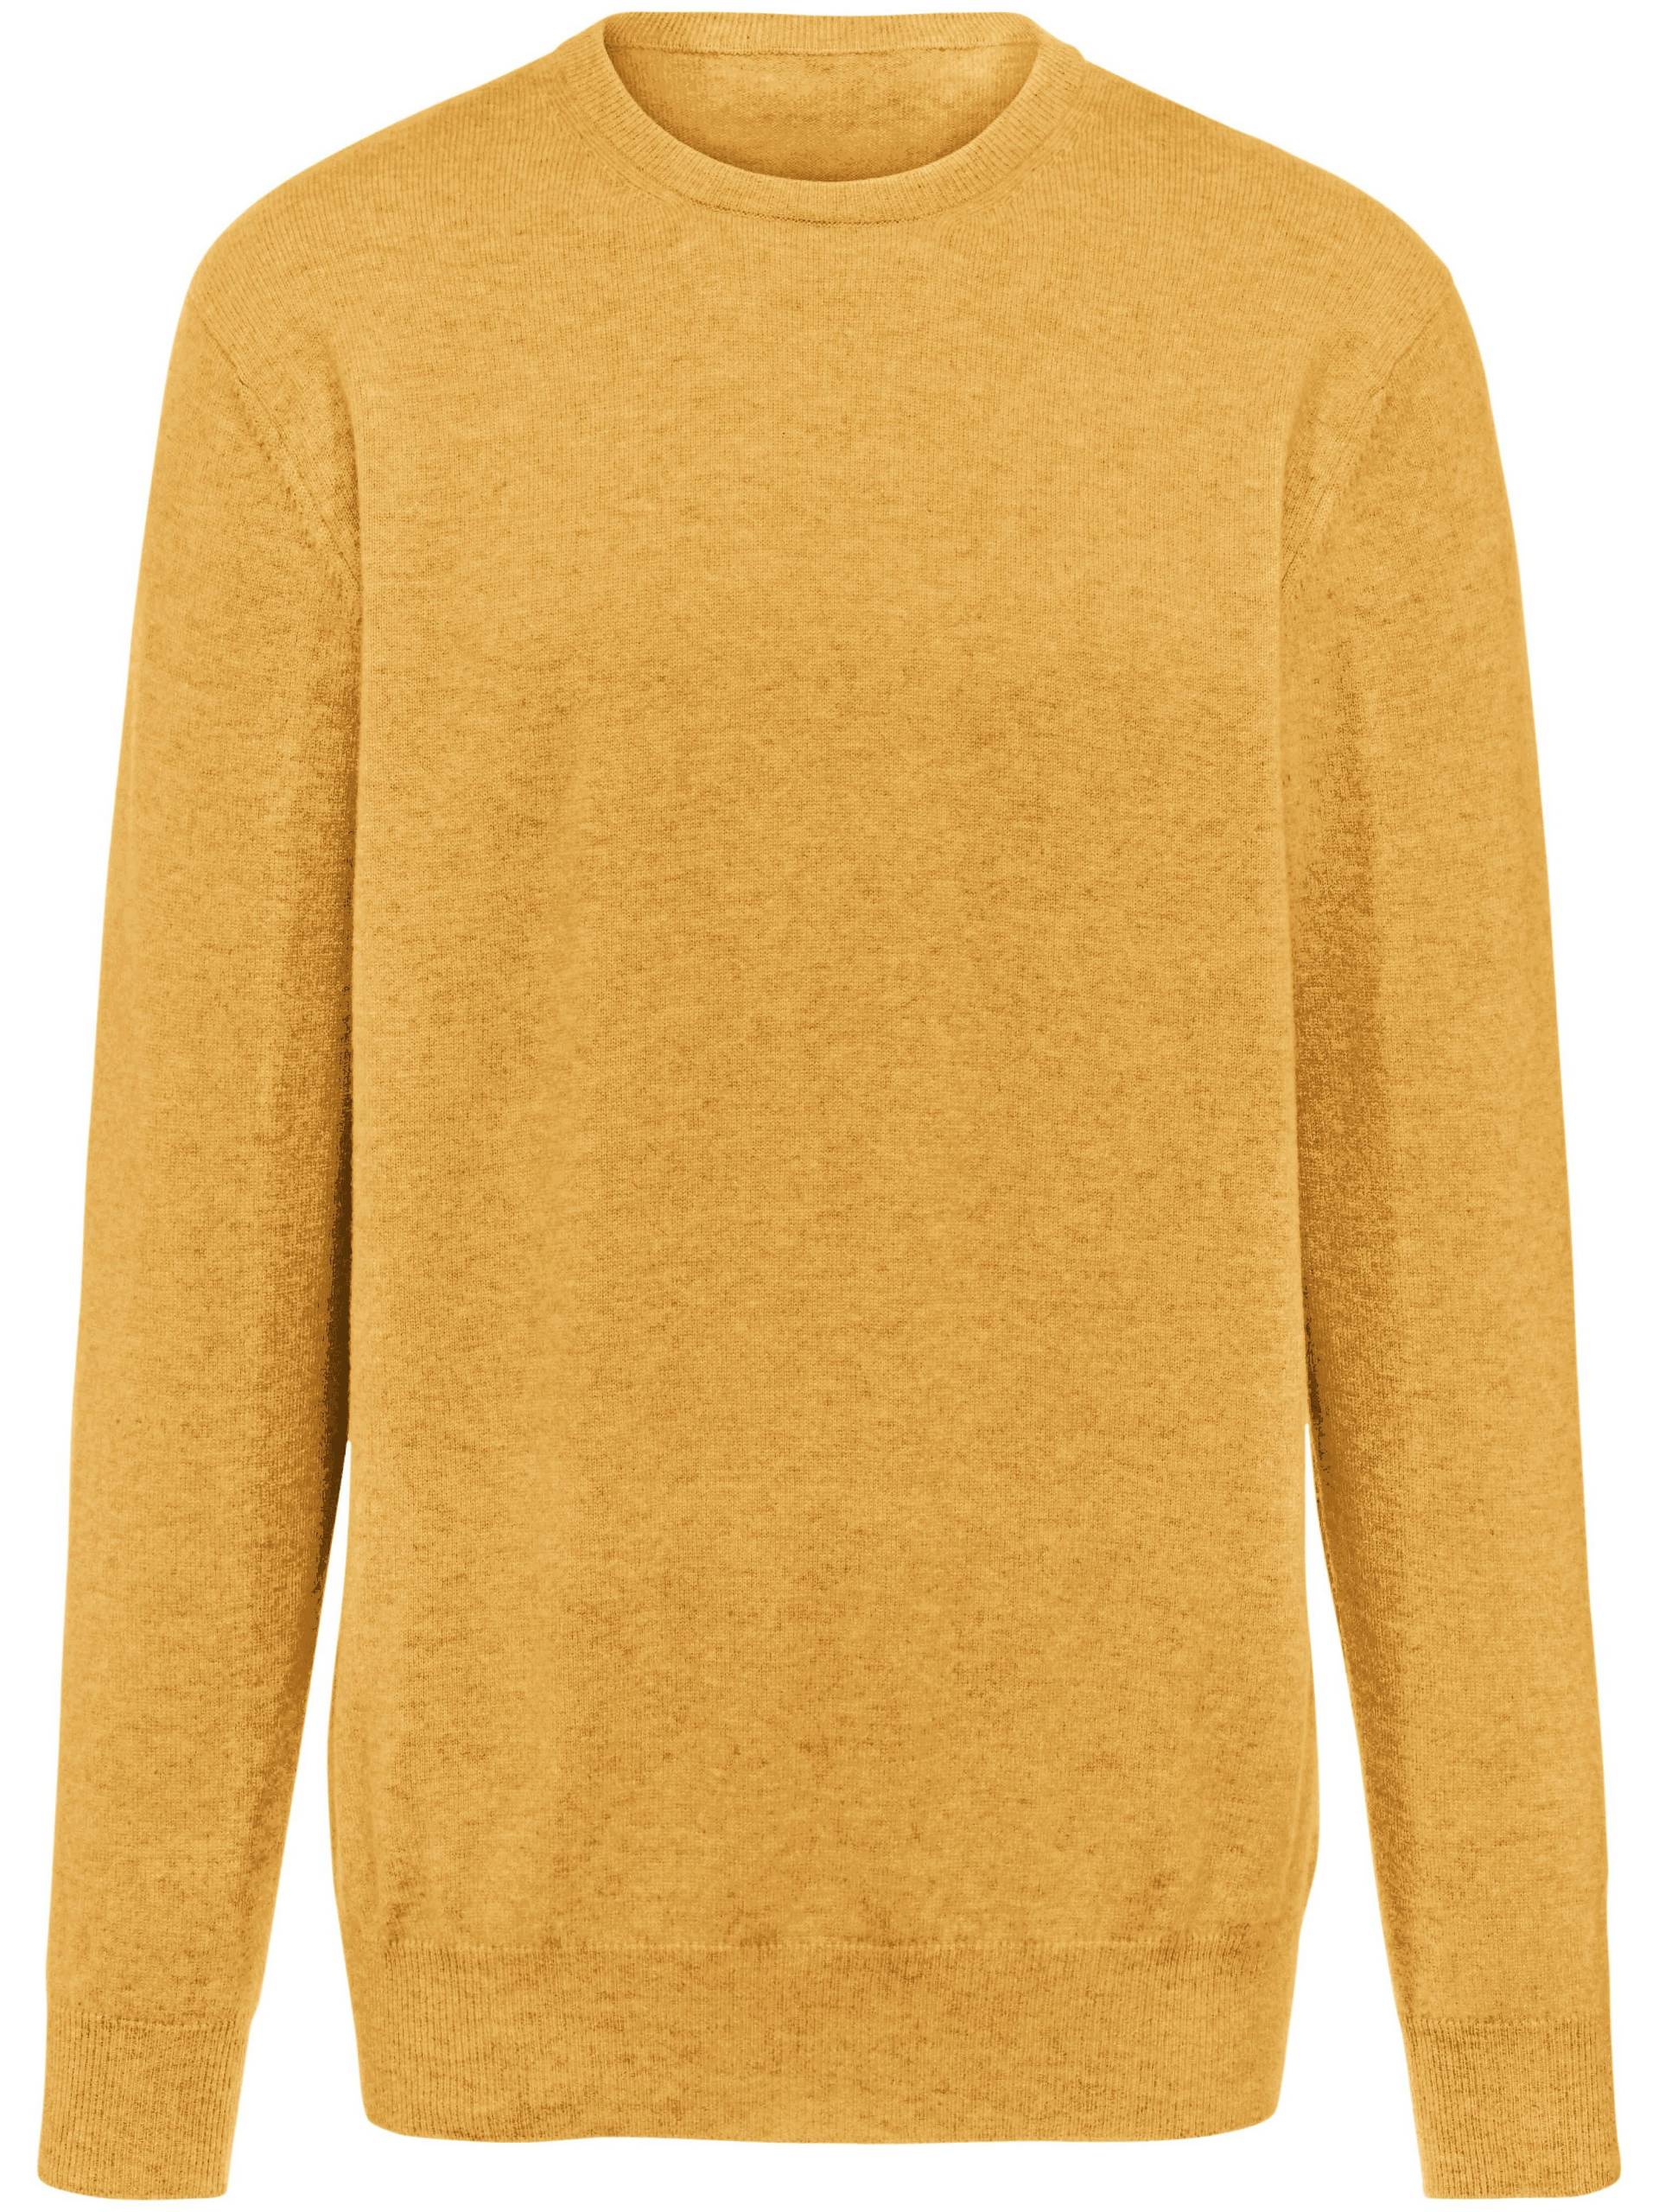 Pullover aus 100% Premium-Kaschmir Modell Ralph Peter Hahn Cashmere gelb Größe: 48 von Peter Hahn Cashmere